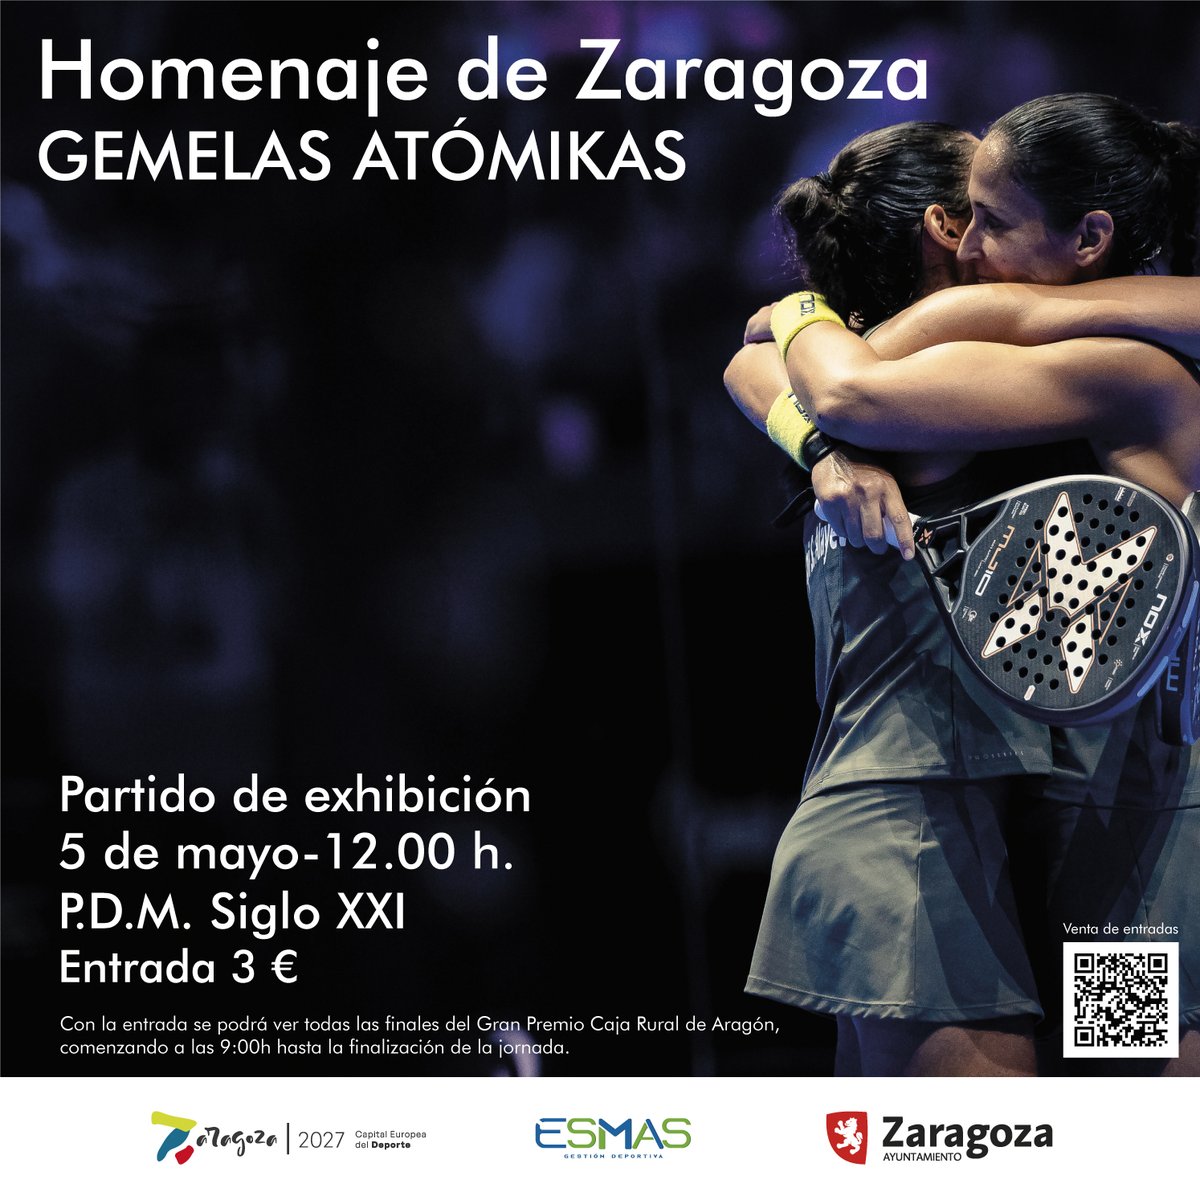 📢 Zaragoza rendirá homenaje a las hermanas Sánchez Alayeto con el torneo de pádel Gran Premio @CajaRuralAragon que celebrará sus finales en la pista central del Centro Deportivo Municipal Siglo XXI.